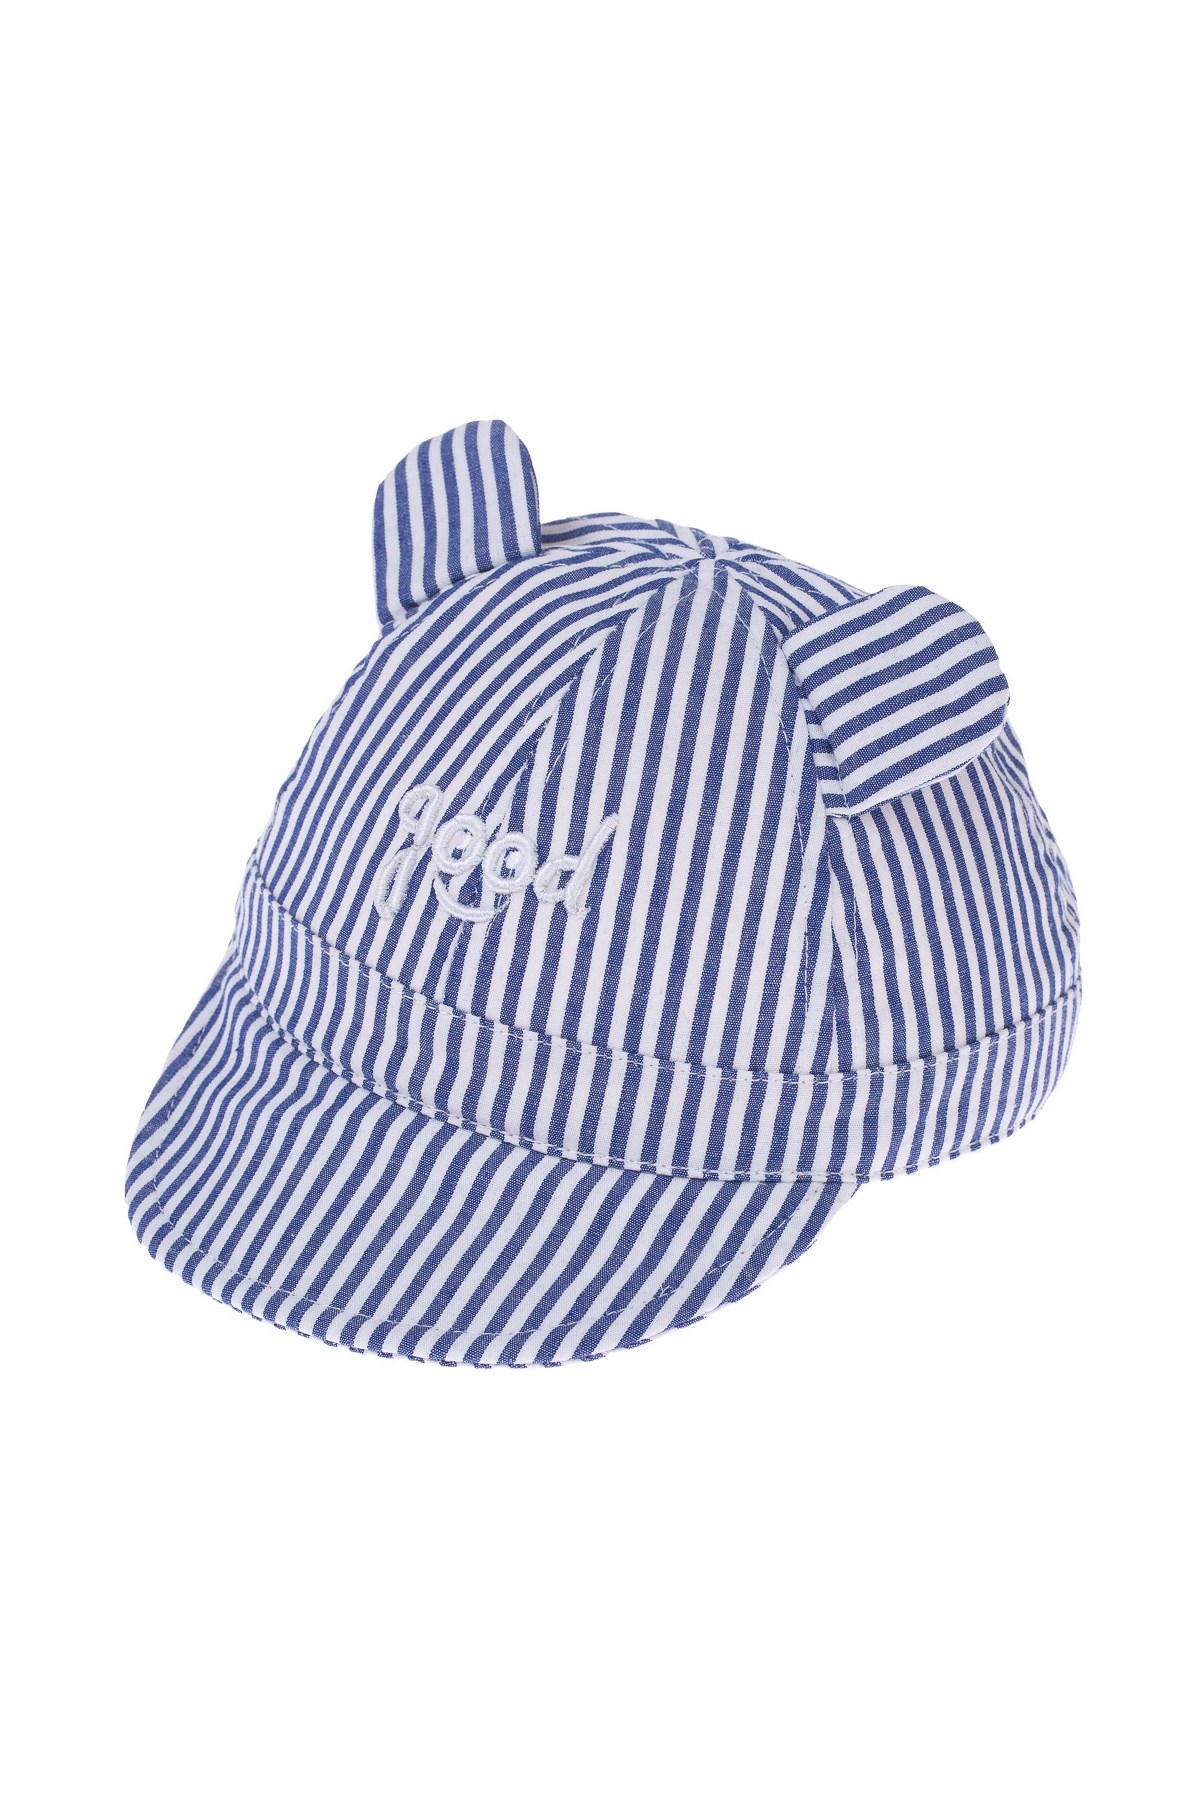 Şirin Kulaklı Çizgili Erkek Bebek Şapka. (en 17 cm )